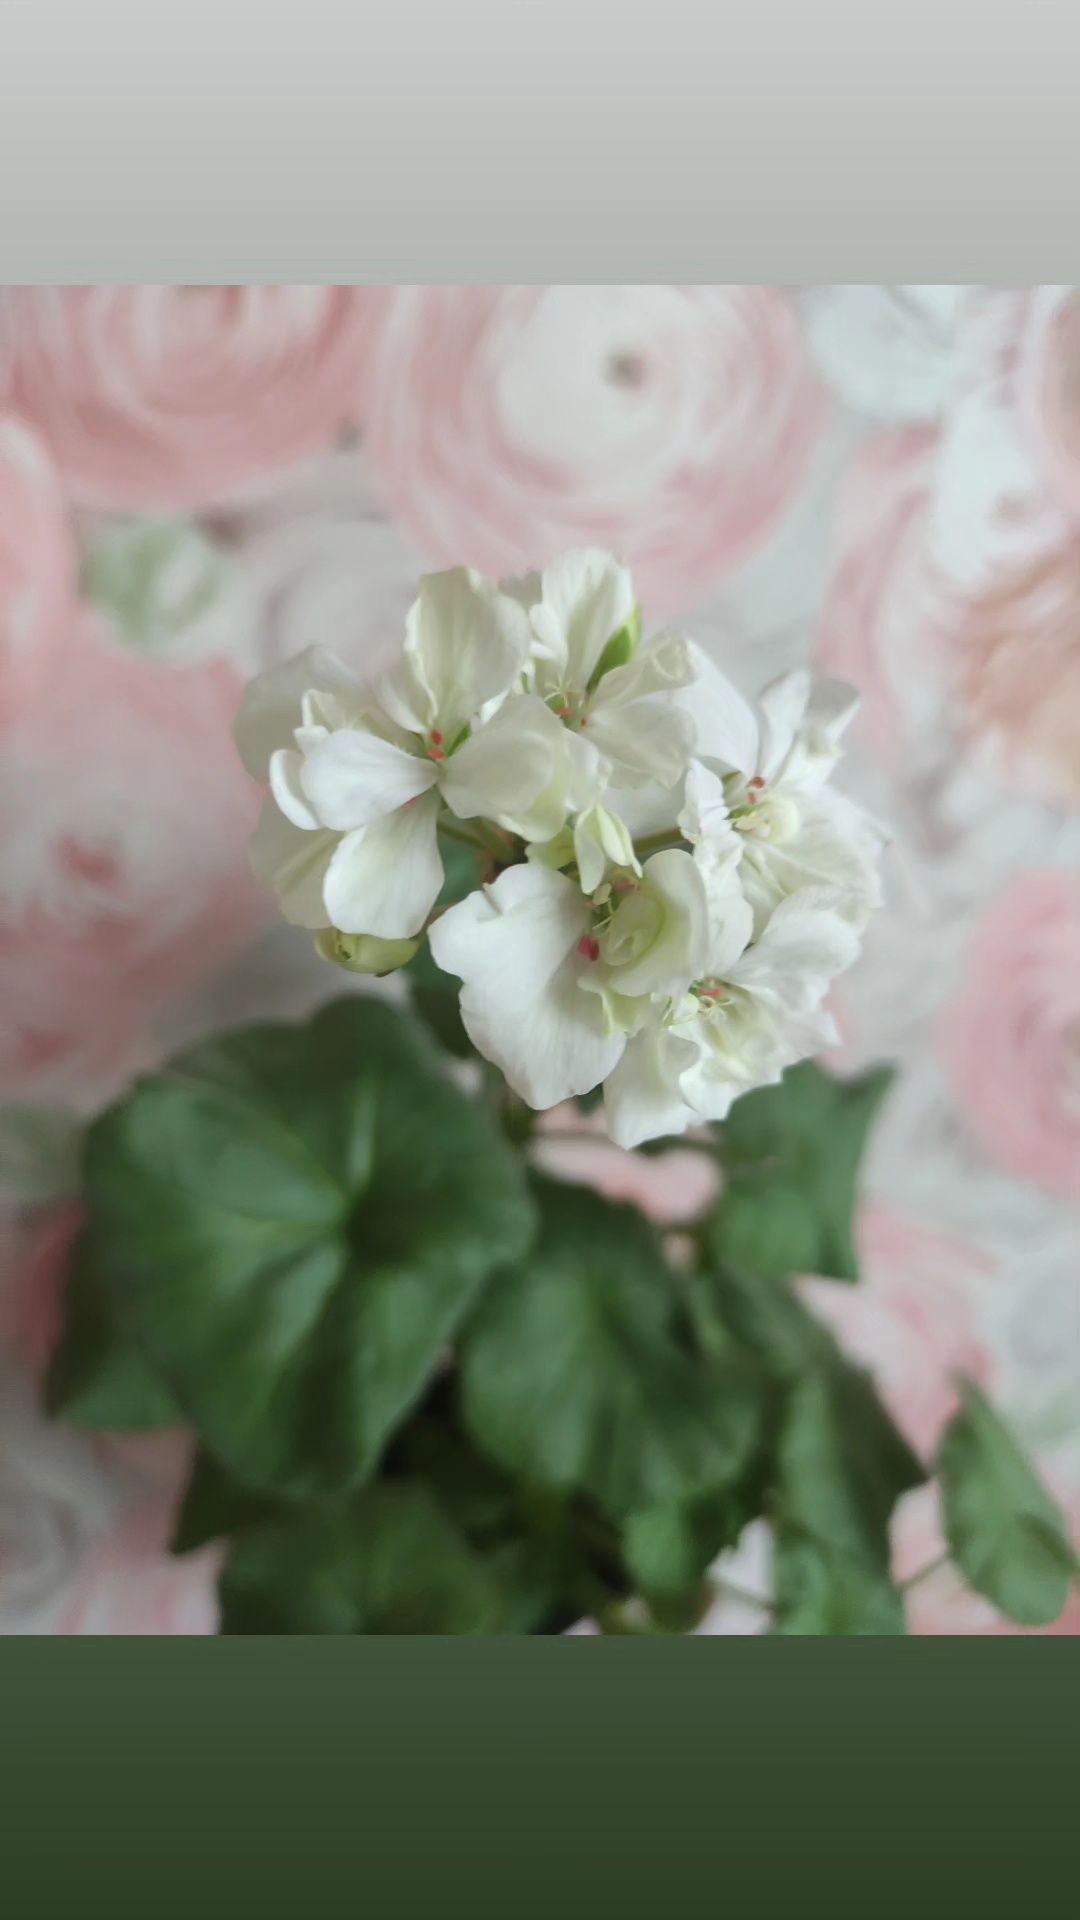 Белая пеларгония, хороший сорт, цветет непрерывно всю зиму